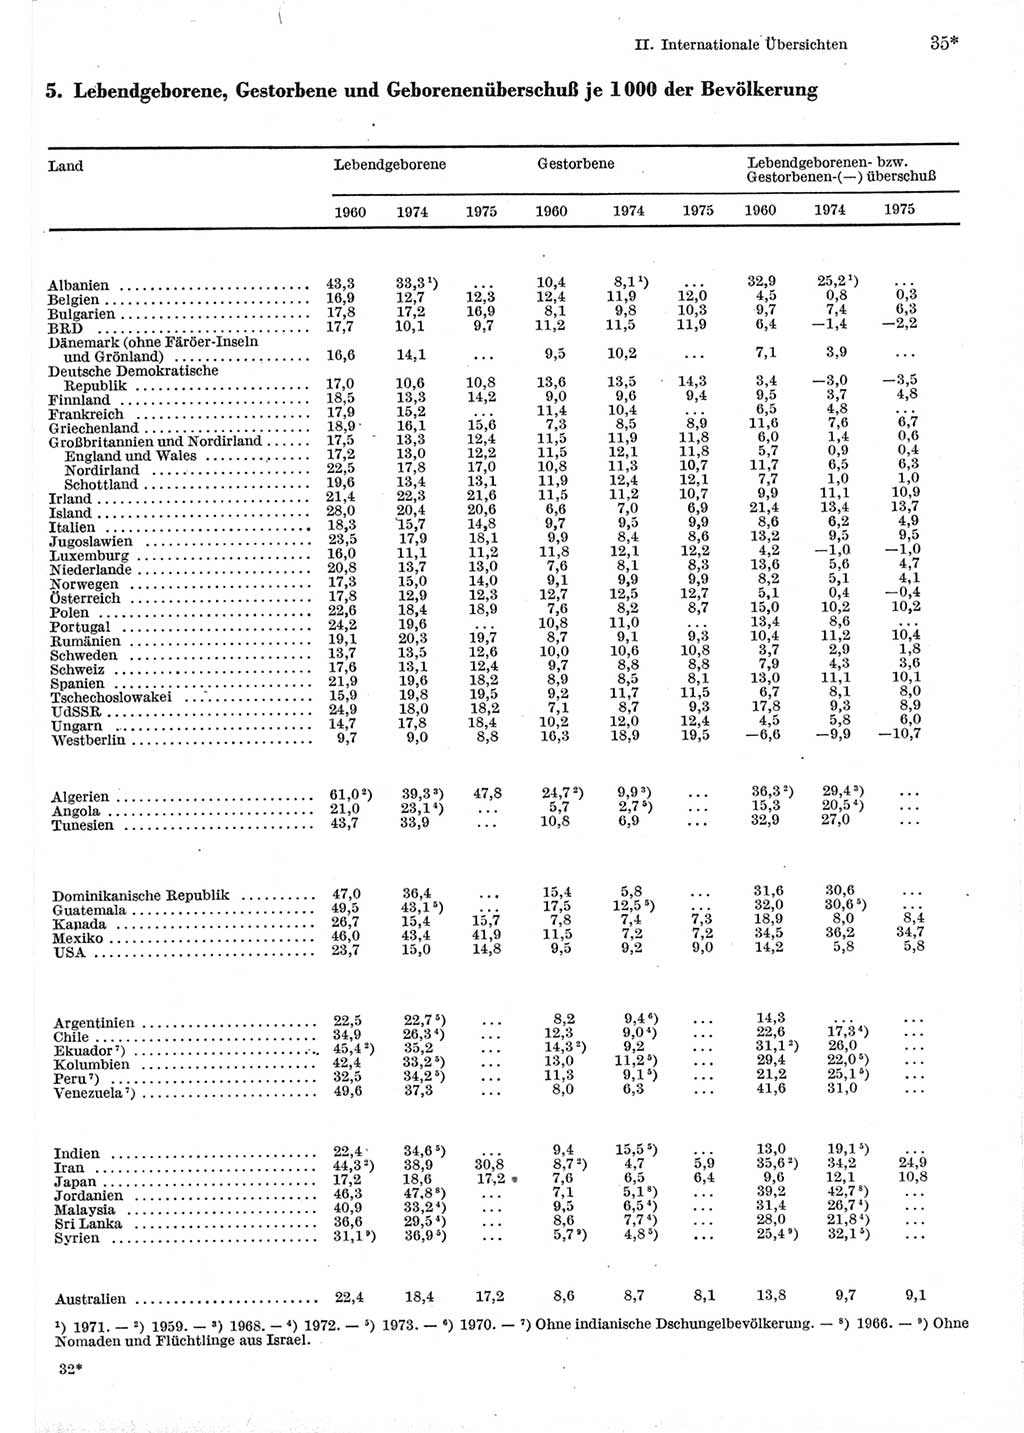 Statistisches Jahrbuch der Deutschen Demokratischen Republik (DDR) 1977, Seite 35 (Stat. Jb. DDR 1977, S. 35)